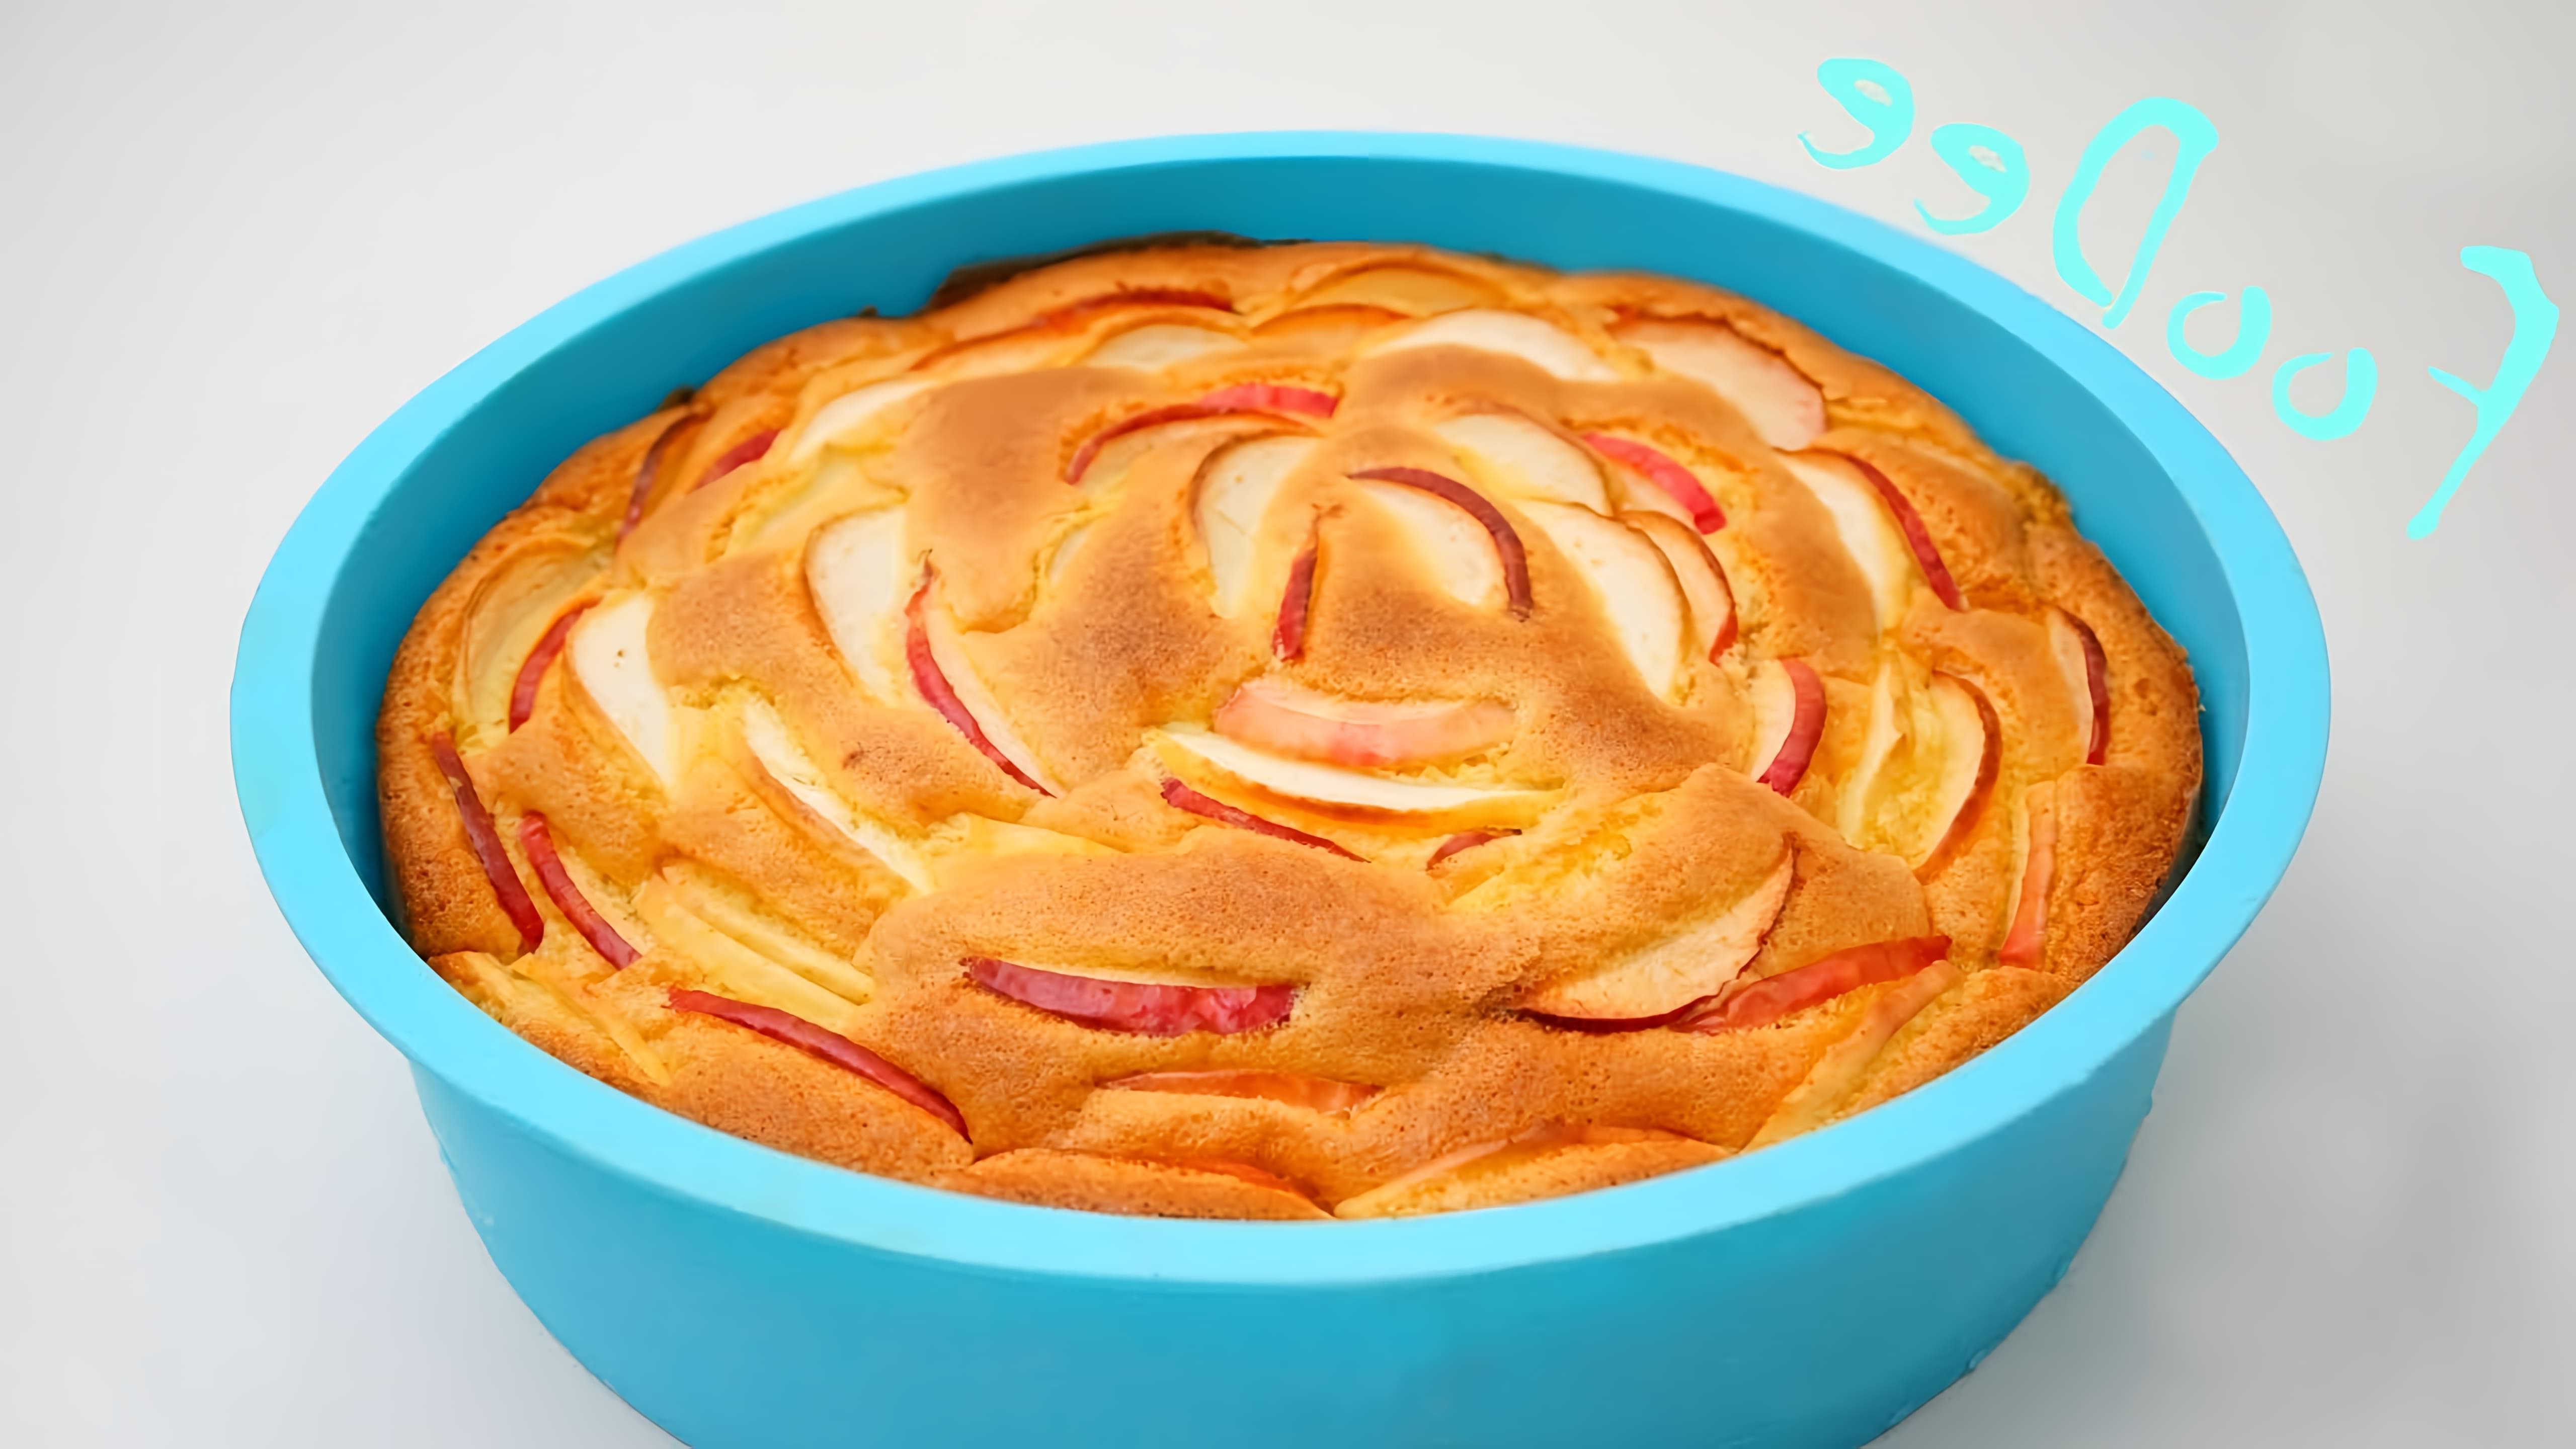 Видео рецепт яблочного пирога под названием "Шарлотта"